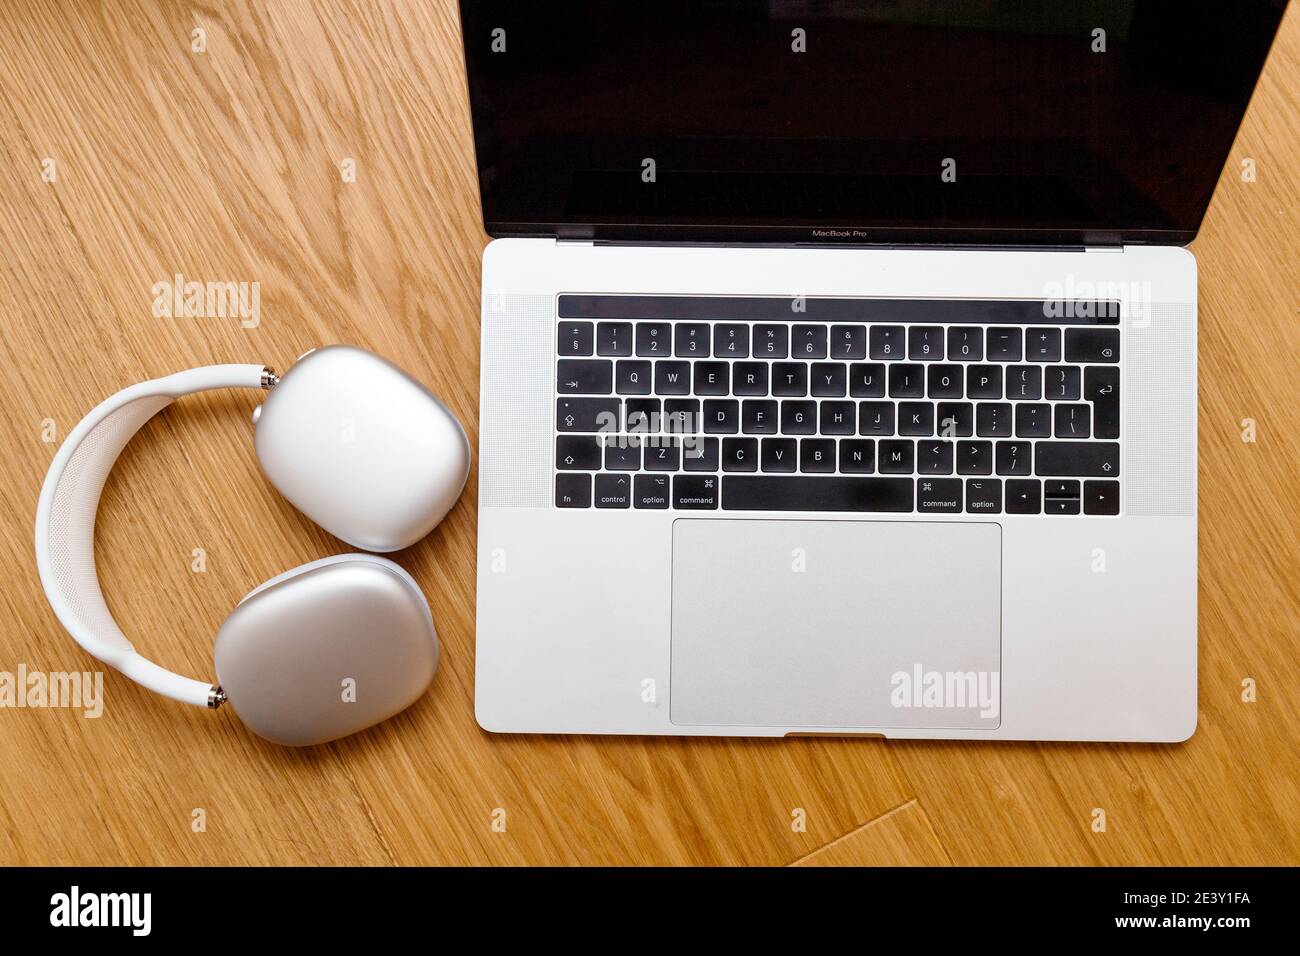 París, Francia - 7 de enero de 2020: Colocado próximo nuevo MacBook Pro M1  portátil los mejores Apple Computers AirPods Max auriculares supra-aurales  Fotografía de stock - Alamy